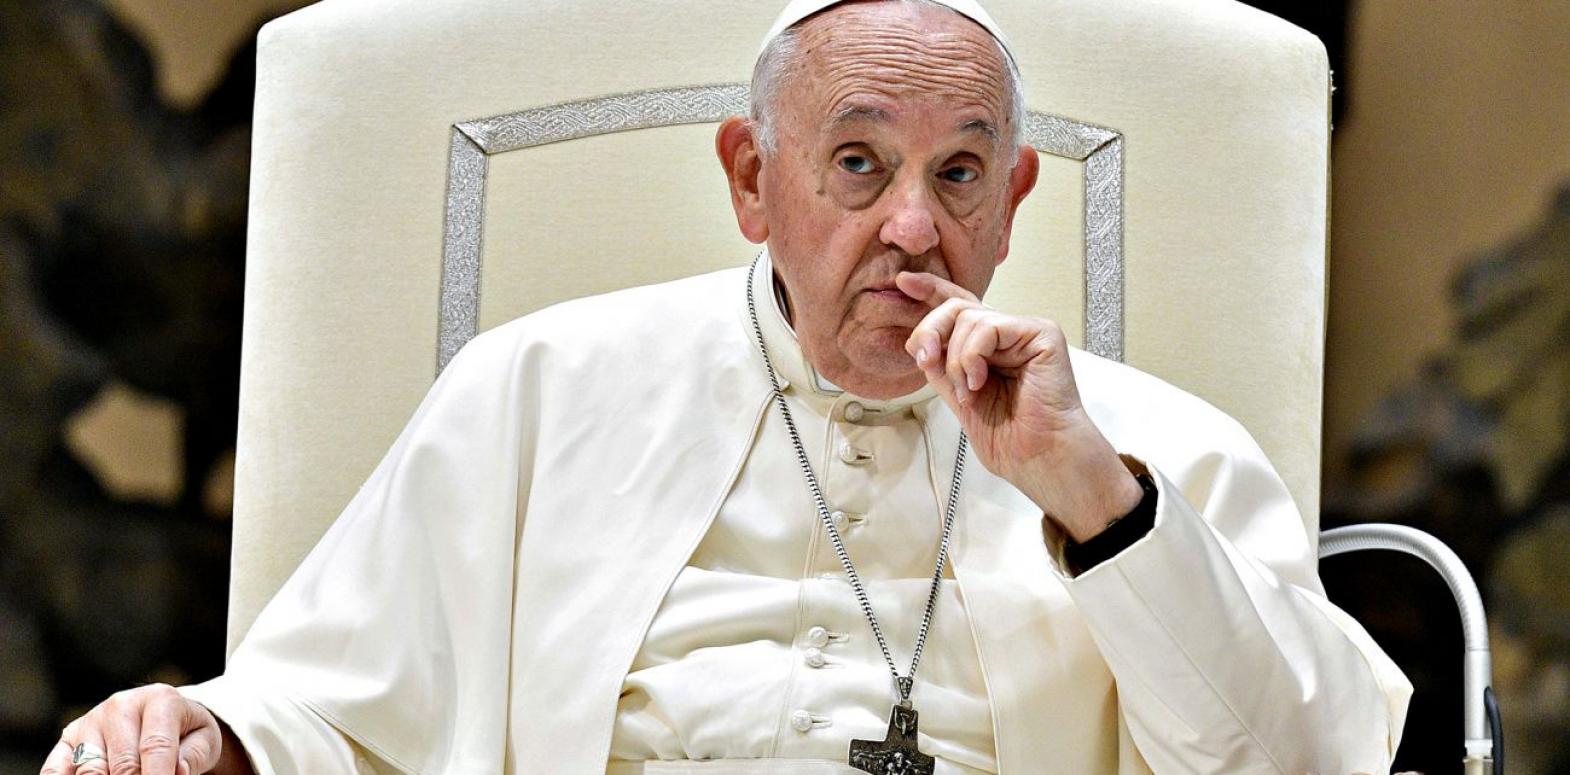 Швейцария пригласила Папу Римского на украинский саммит мира